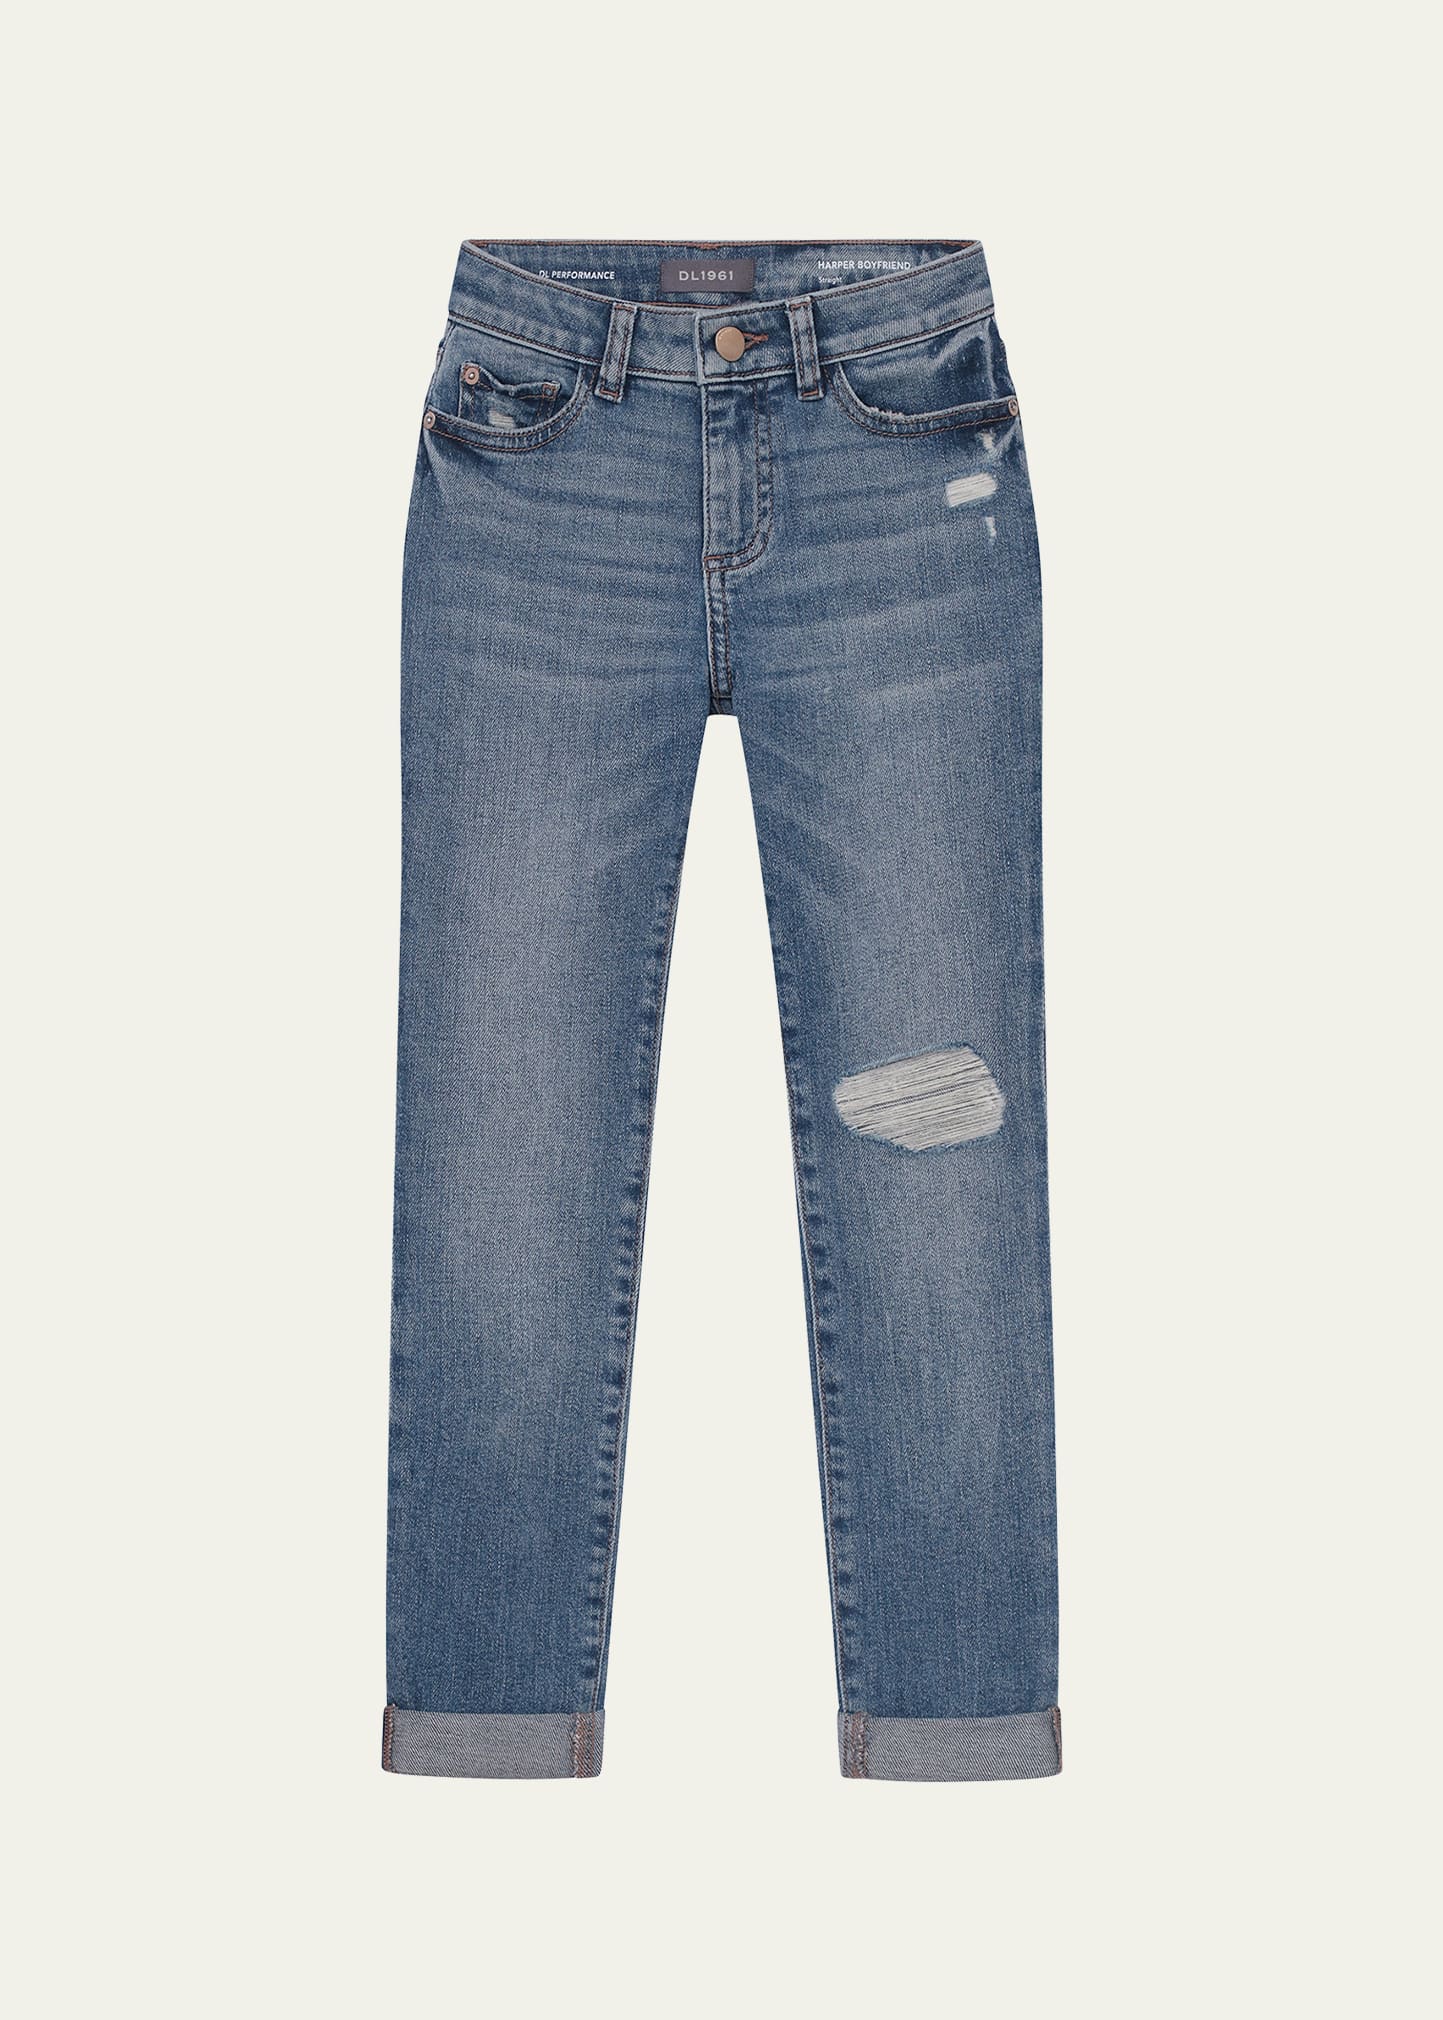 DL Premium Denim Girl's Harper Boyfriend Style Jeans, Size S-14